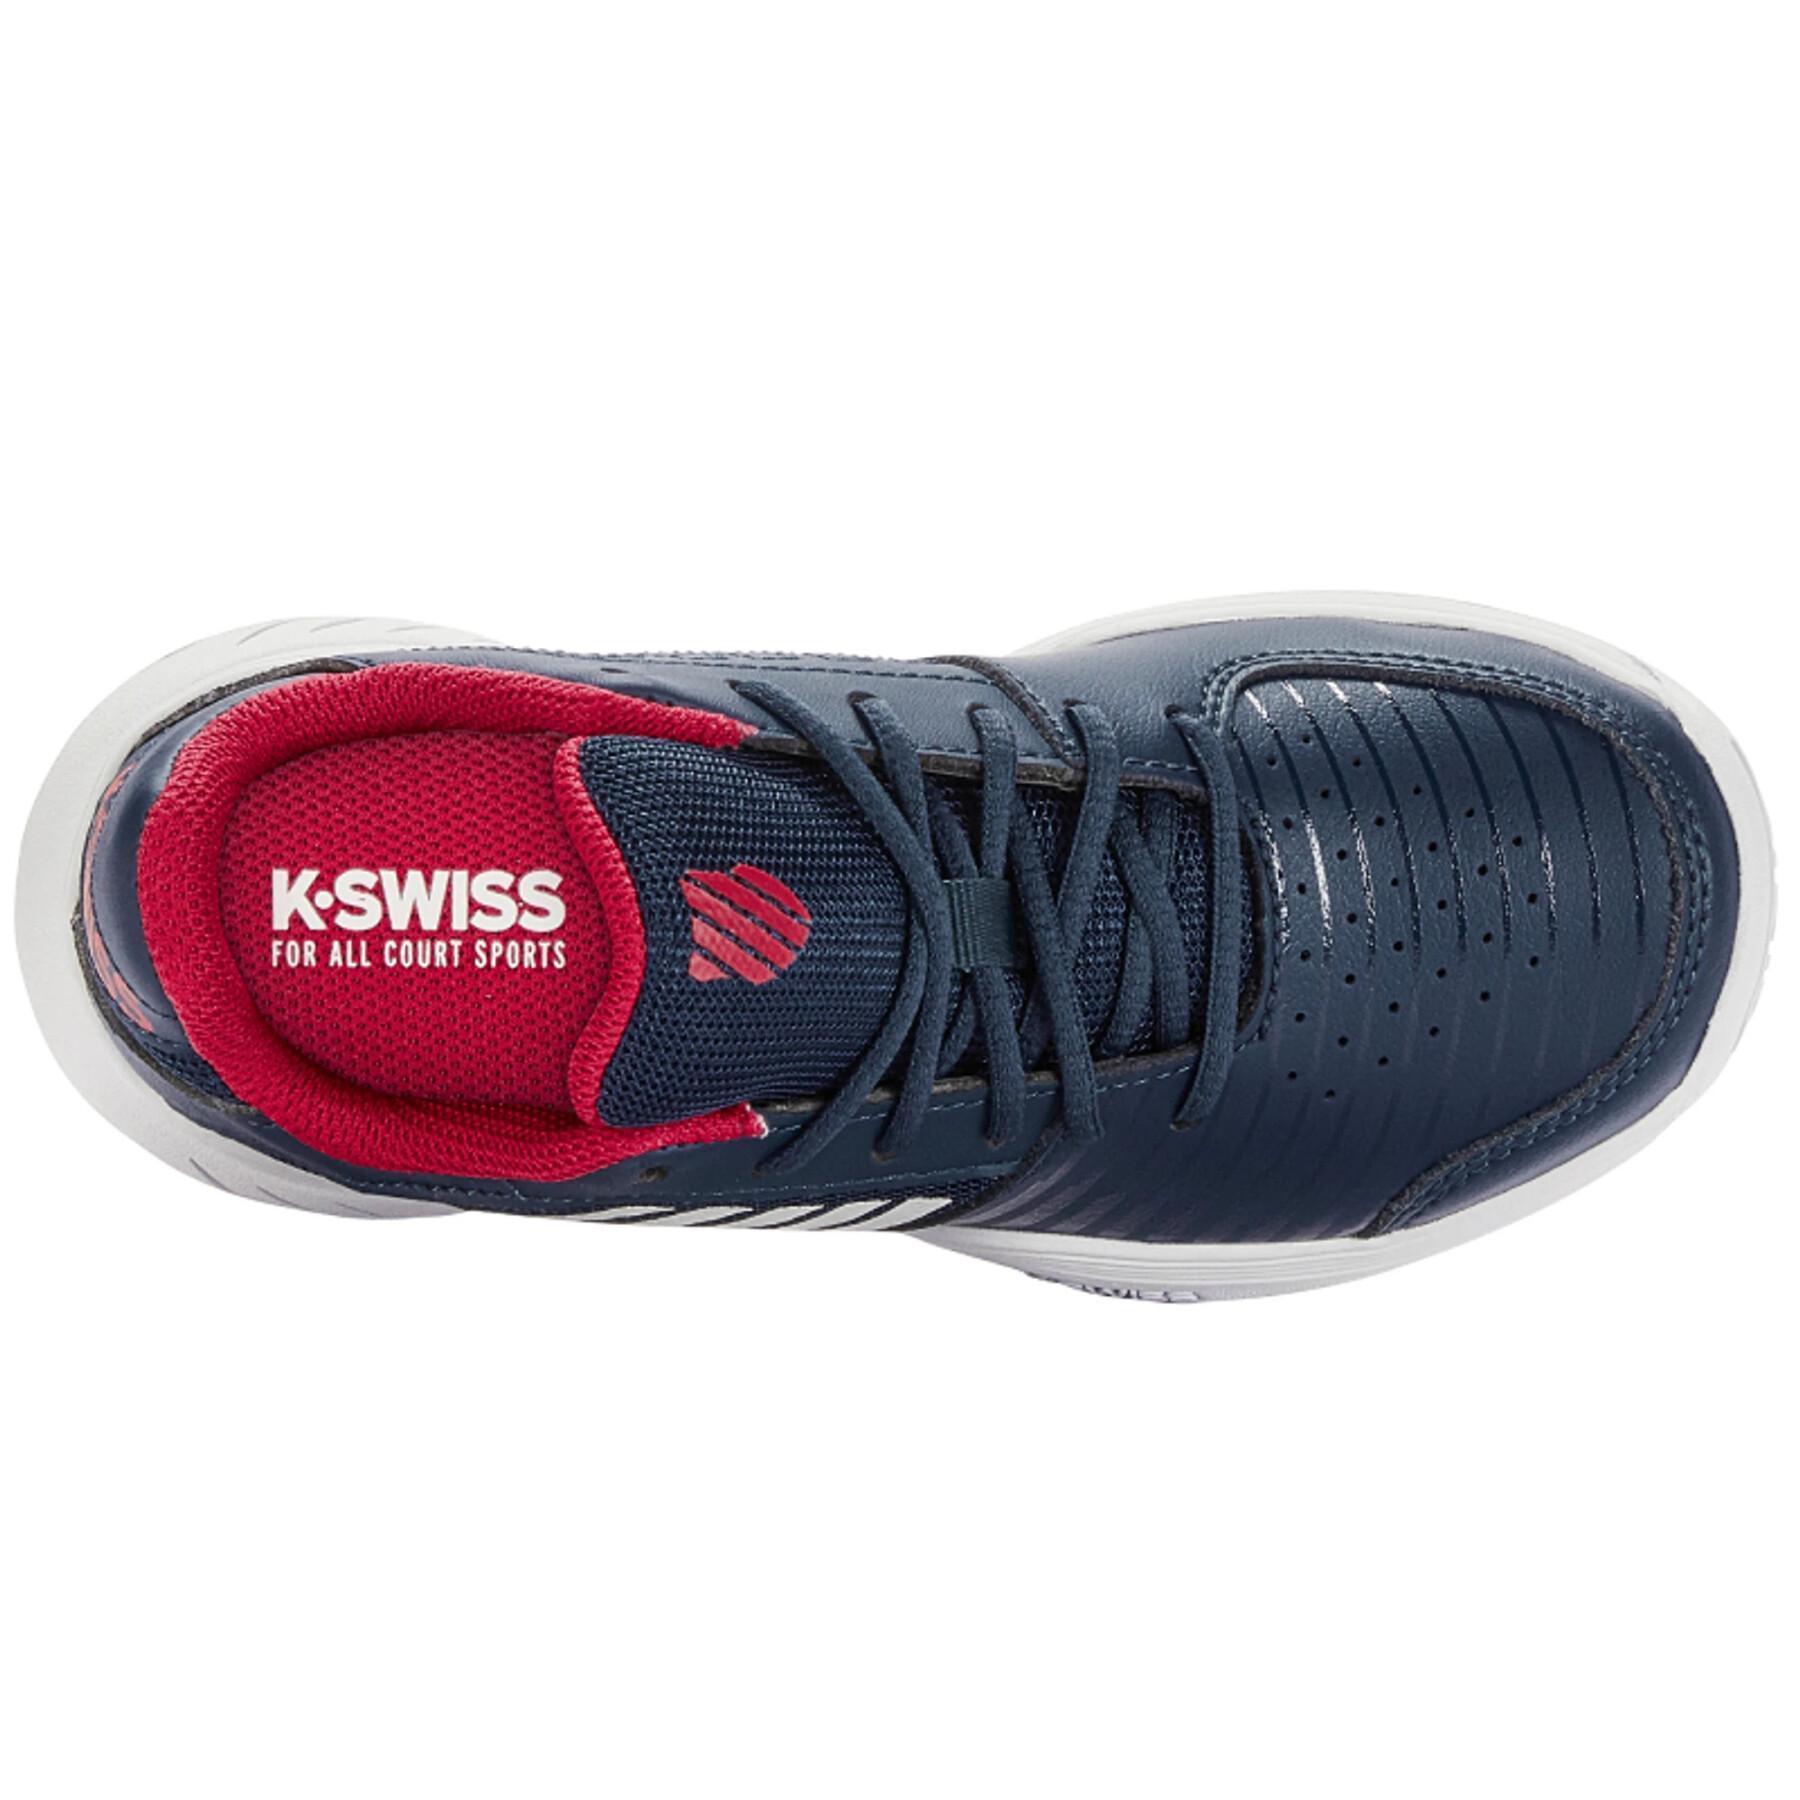 Children's tennis shoes K-Swiss Court Express Omni